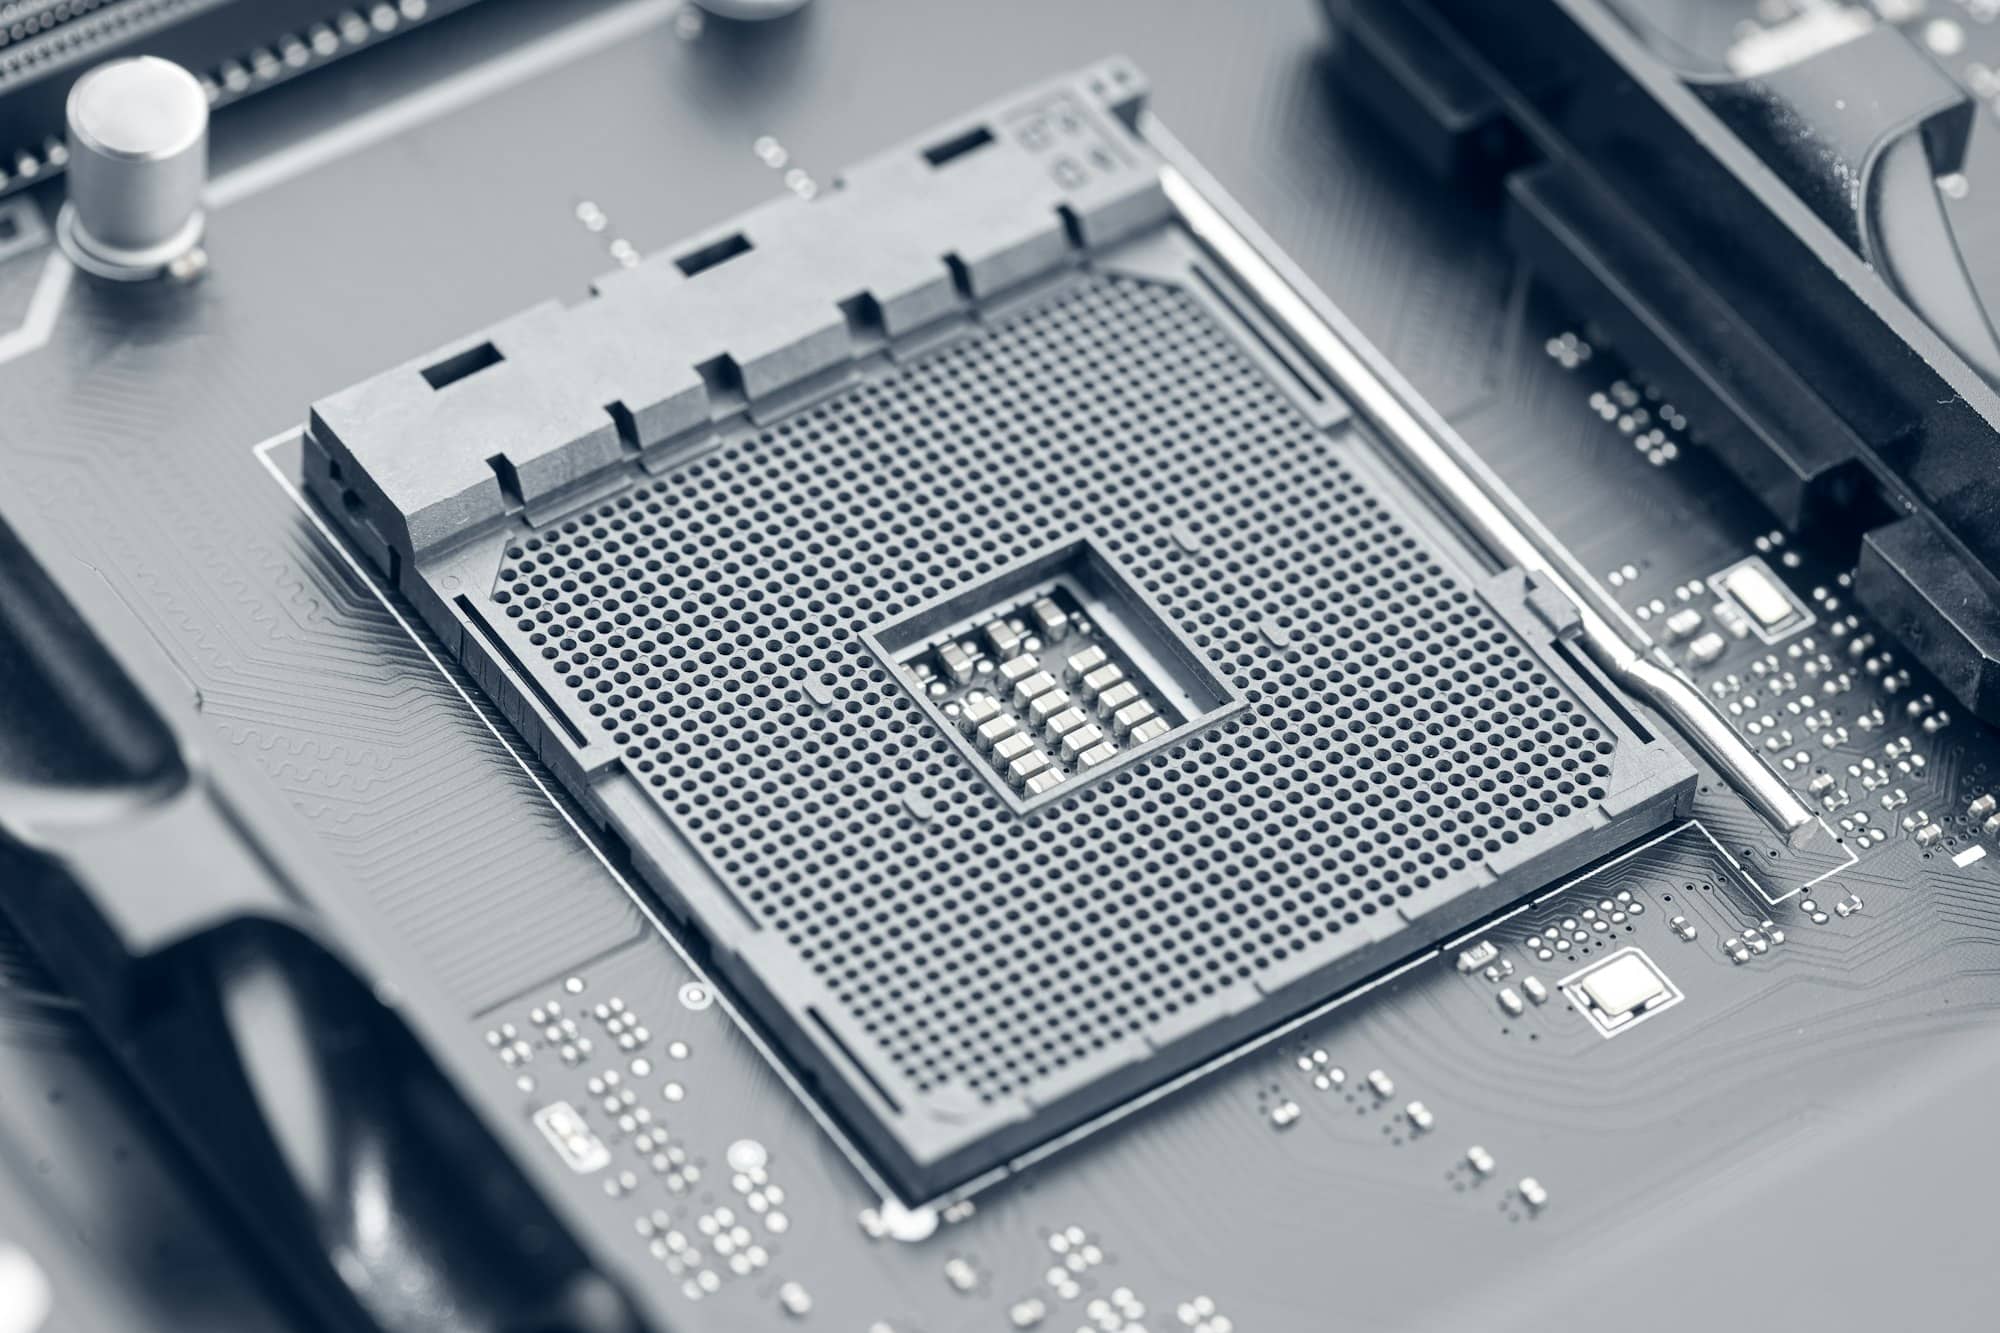 quelle est la température maximale d’un CPU ?